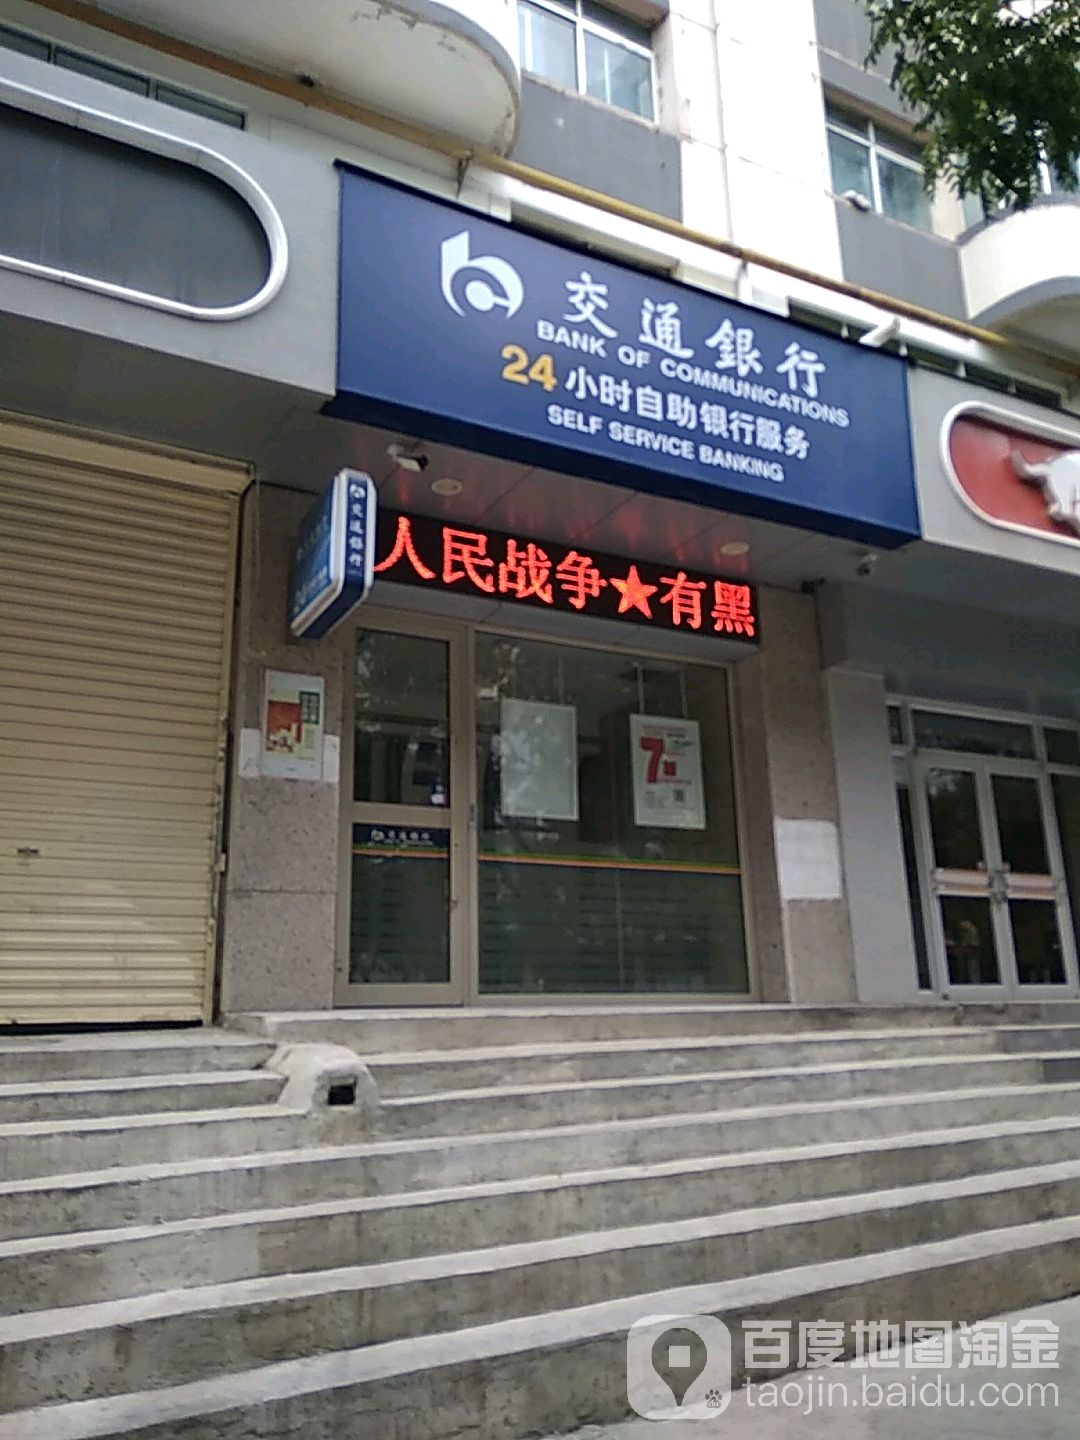 交通銀行24小時自助銀行服務(橋頭社區衛生服務站西北)